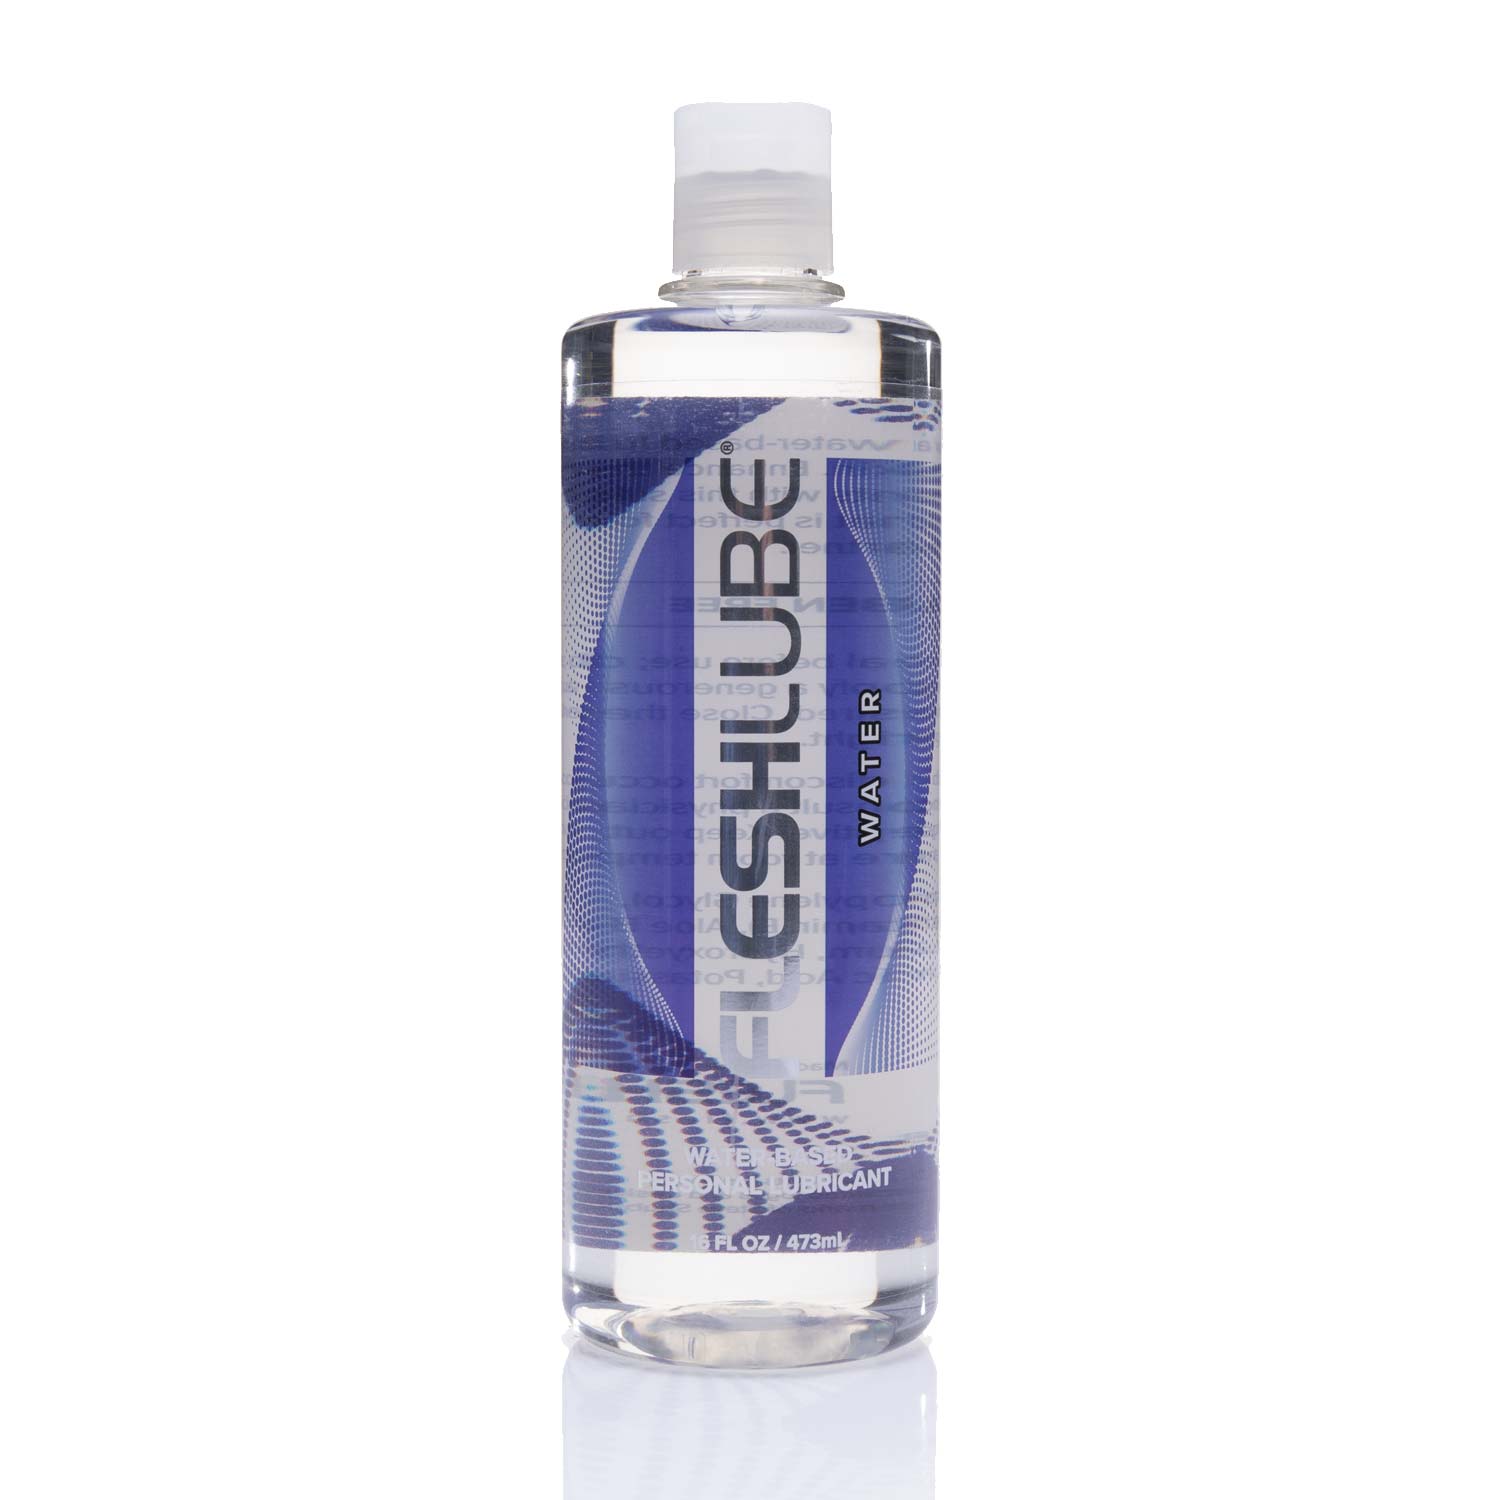 16oz bottle of Fleshlight Lube Water based